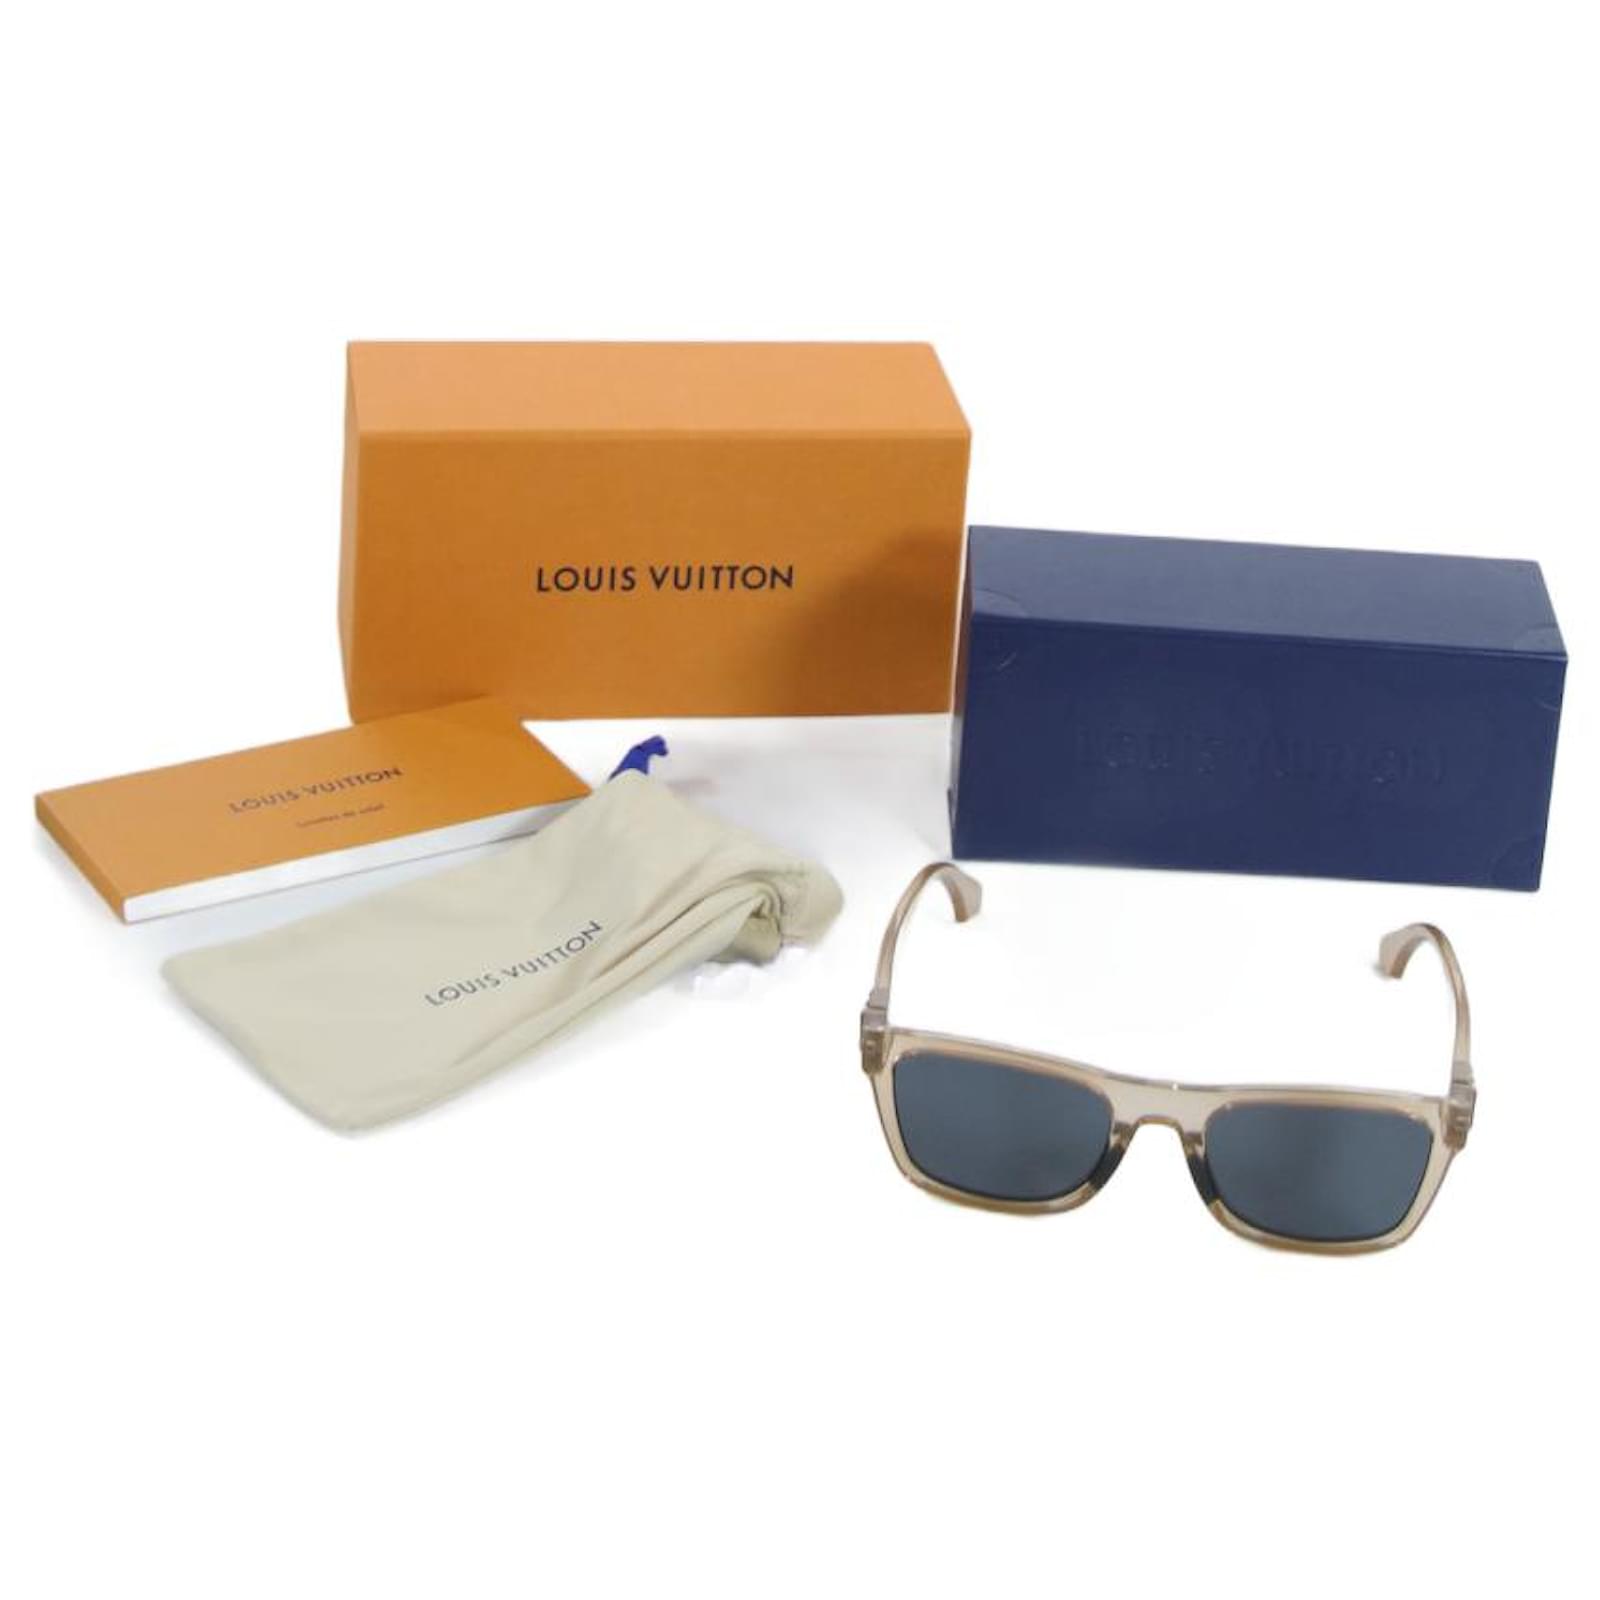 Louis Vuitton 1.1 Millionaires Sunglasses Green... - Depop